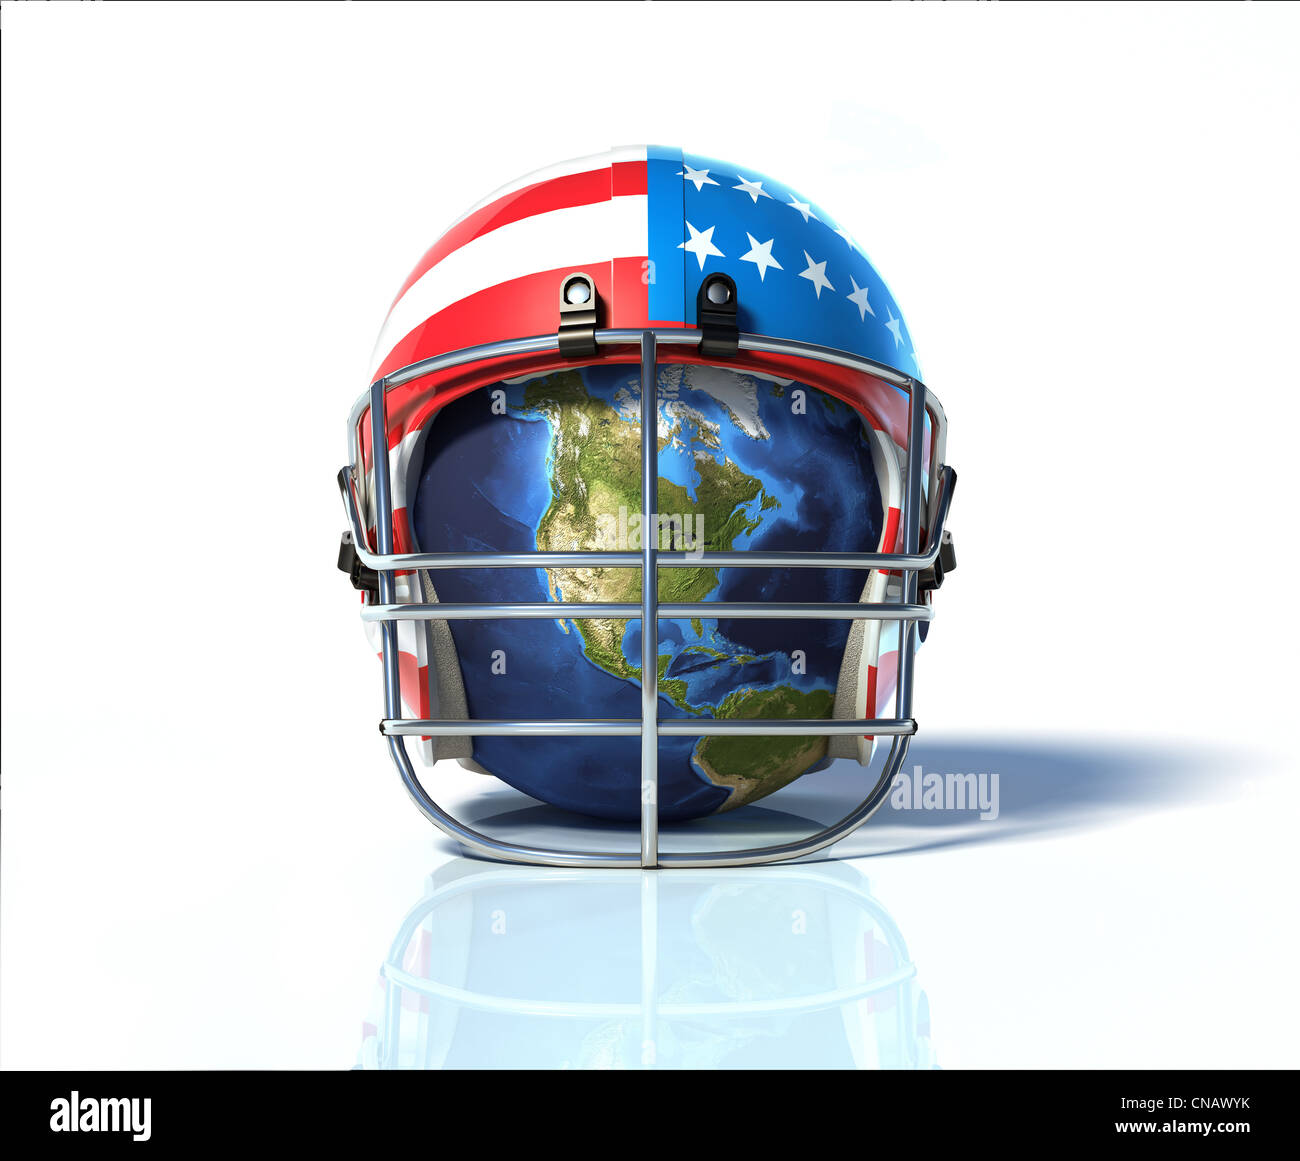 US-amerikanischer American-Football-Helm, mit Erde im Inneren, auf Nordamerika. Auf eine reflektierende weiße Oberfläche. Stockfoto